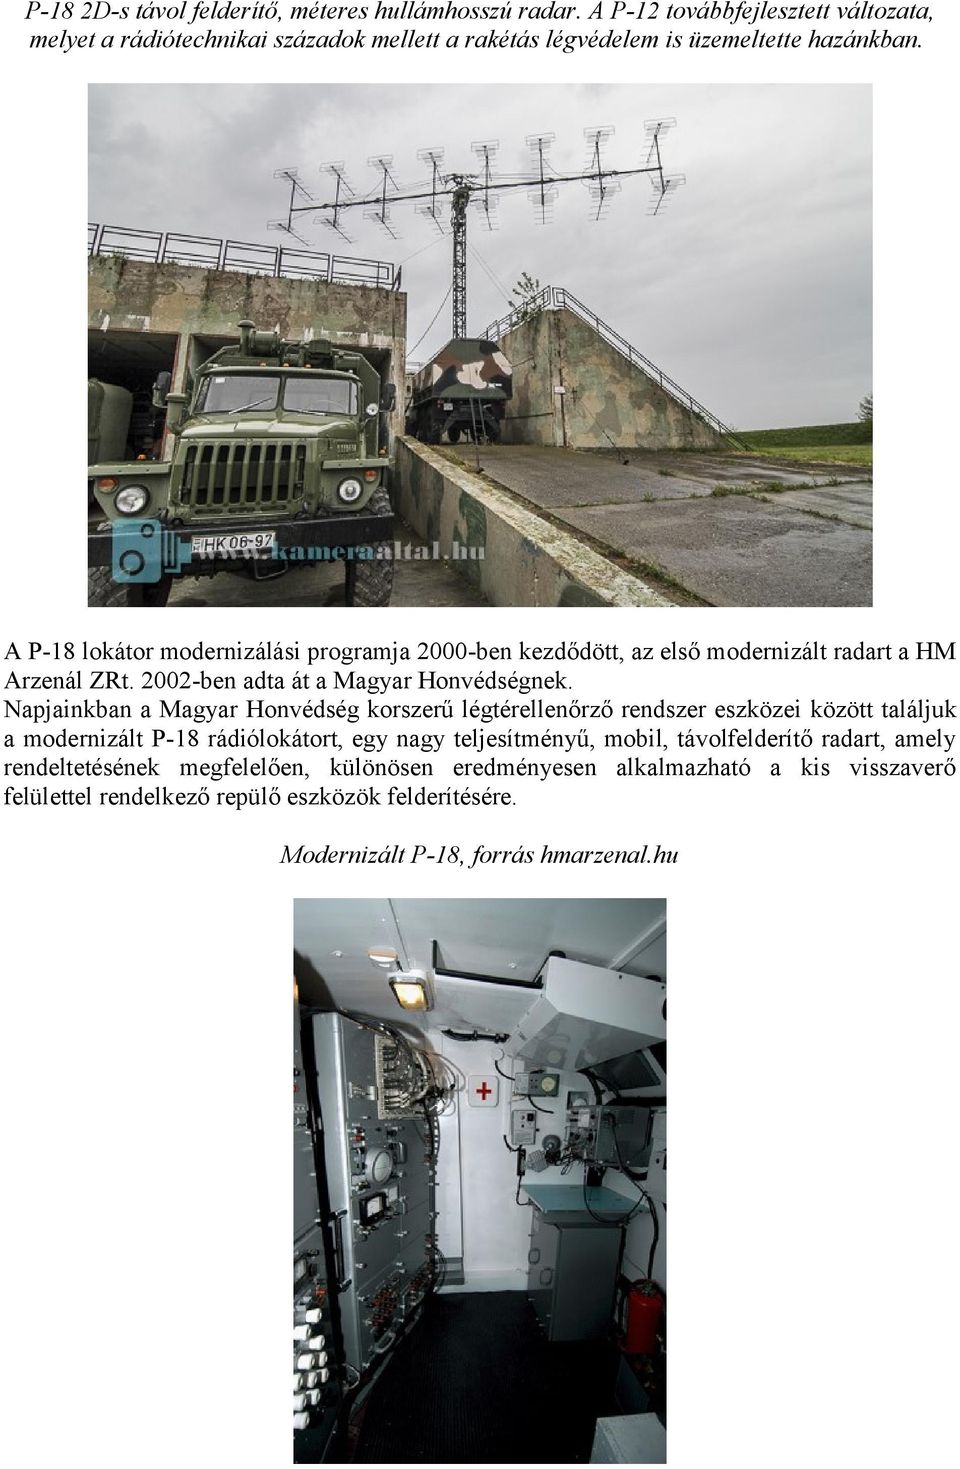 A P-18 lokátor modernizálási programja 2000-ben kezdődött, az első modernizált radart a HM Arzenál ZRt. 2002-ben adta át a Magyar Honvédségnek.